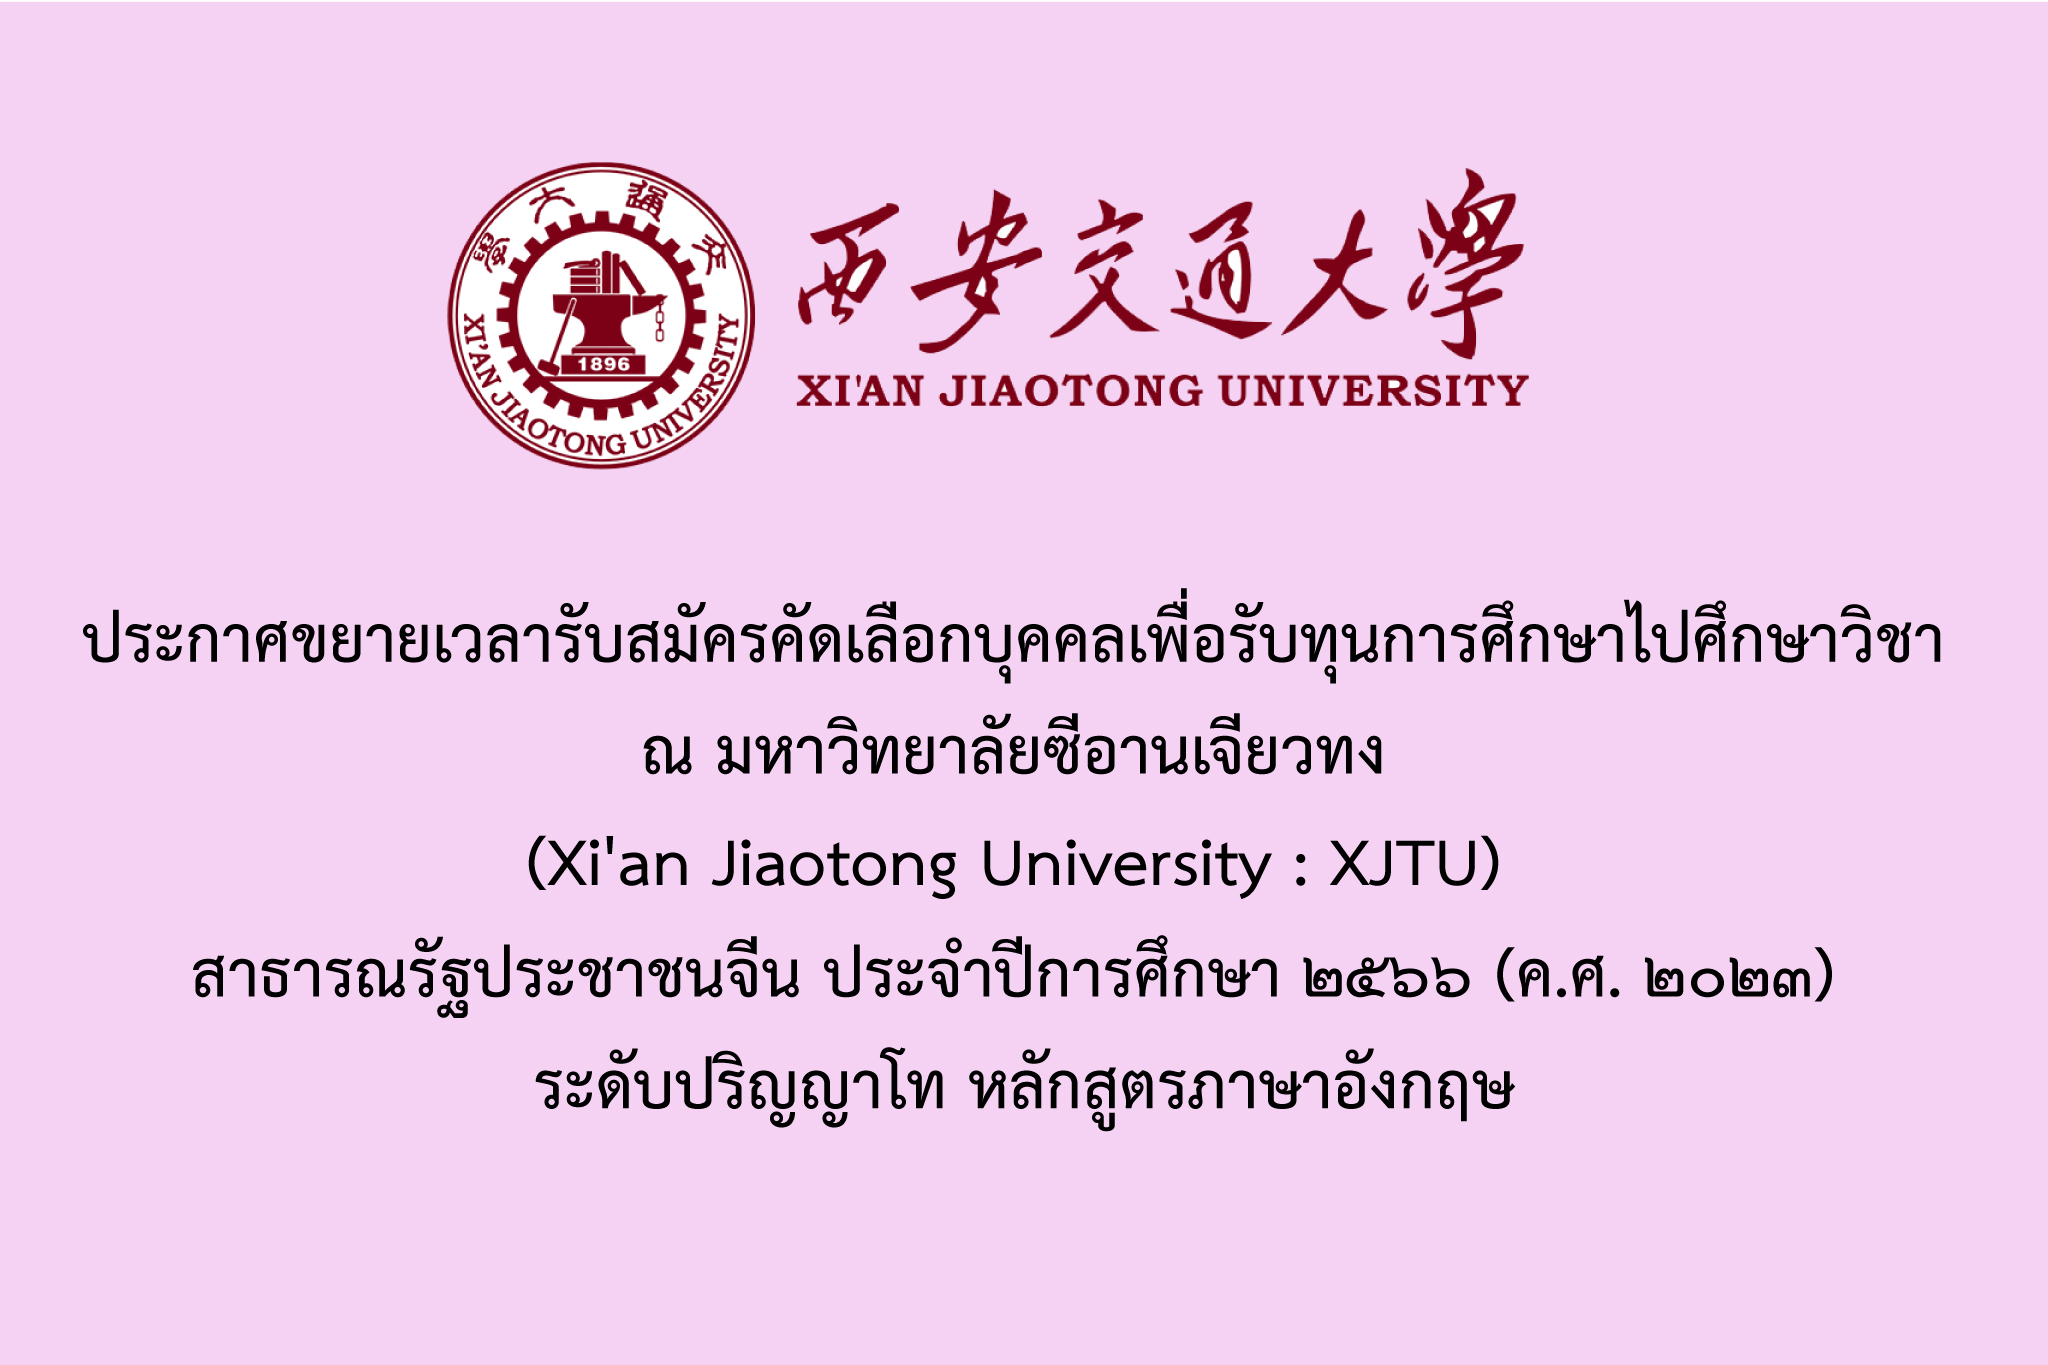 ประกาศขยายเวลารับสมัครคัดเลือกบุคคลเพื่อรับทุนการศึกษาไปศึกษาวิชา  ณ มหาวิทยาลัยซีอานเจียวทง (Xi'an Jiaotong University : XJTU) สาธารณรัฐประชาชนจีน ประจำปีการศึกษา ๒๕๖๖ (ค.ศ. ๒๐๒๓) ระดับปริญญาโท หลักสูตรภาษาอังกฤษ